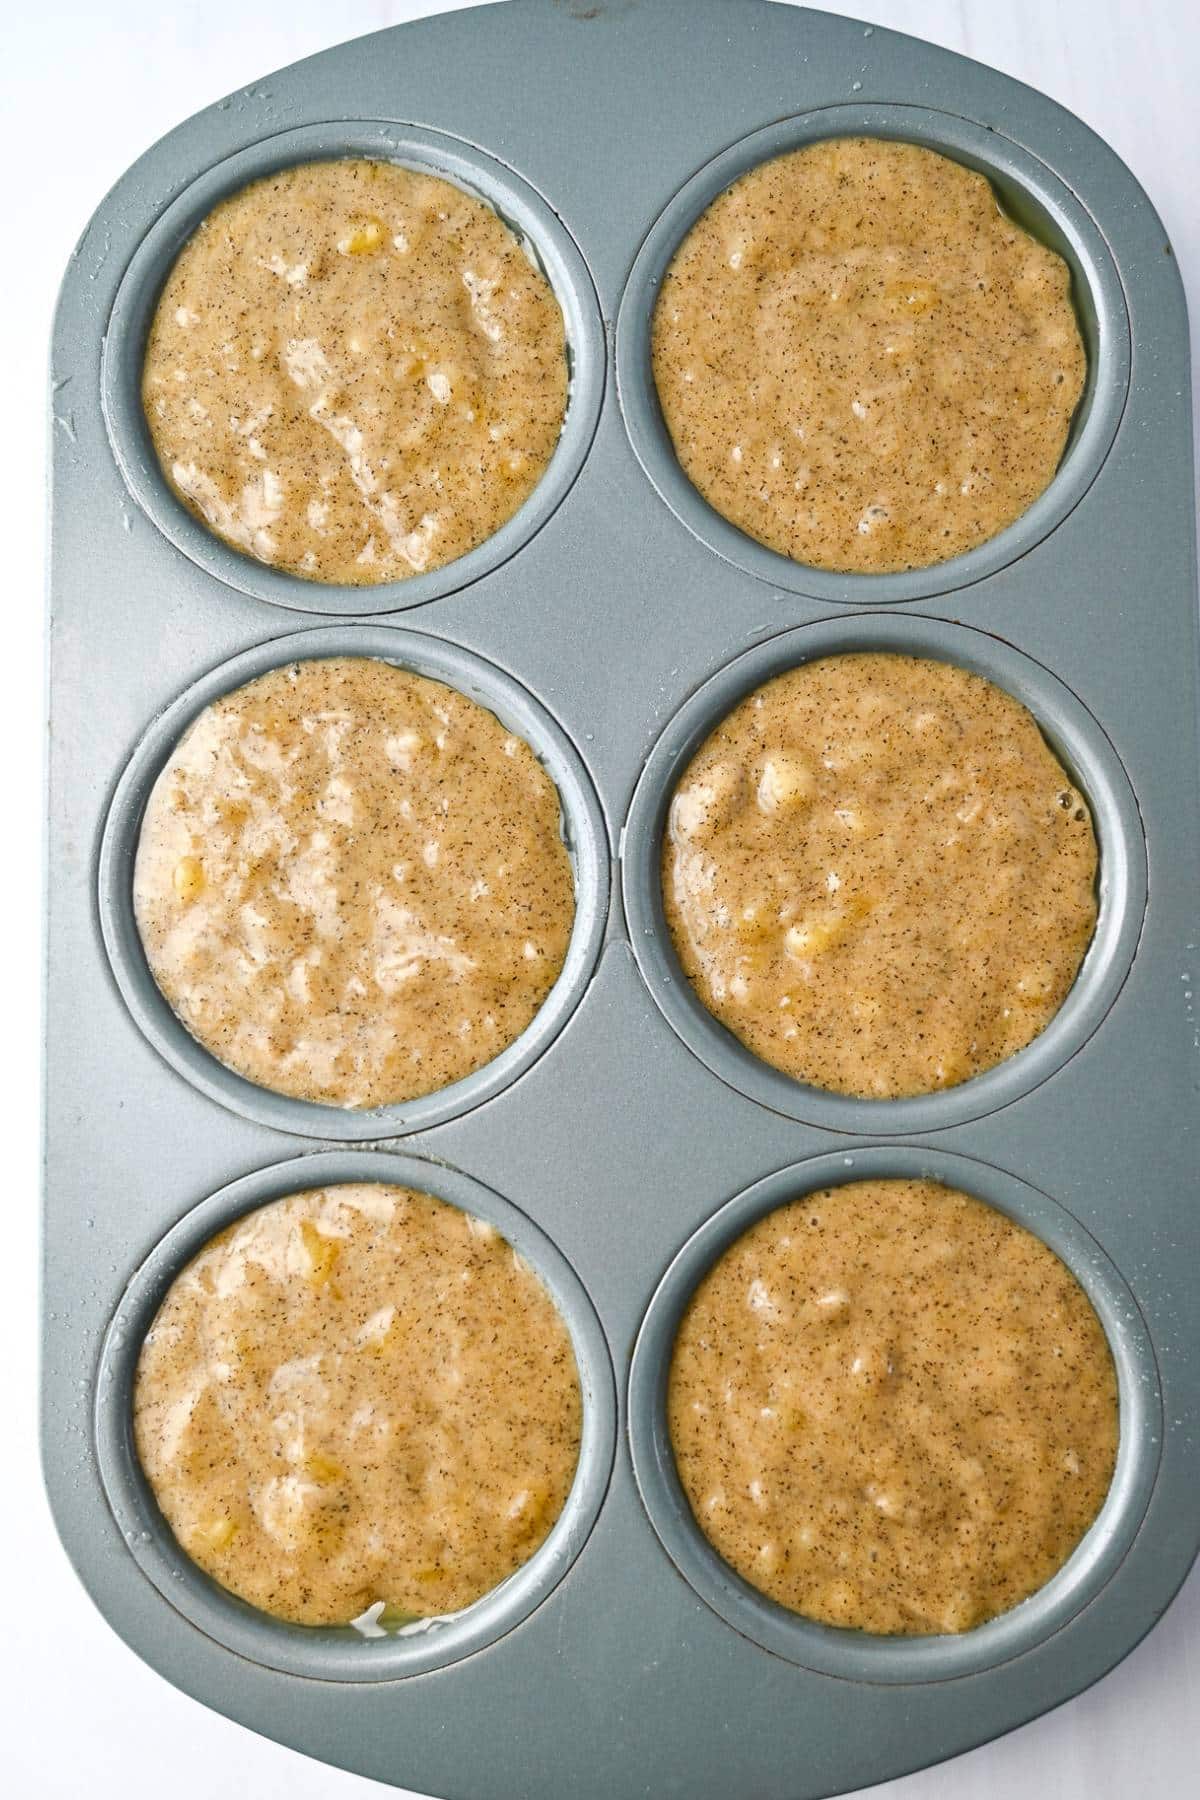 banana muffin batter in a muffin pan ready to bake